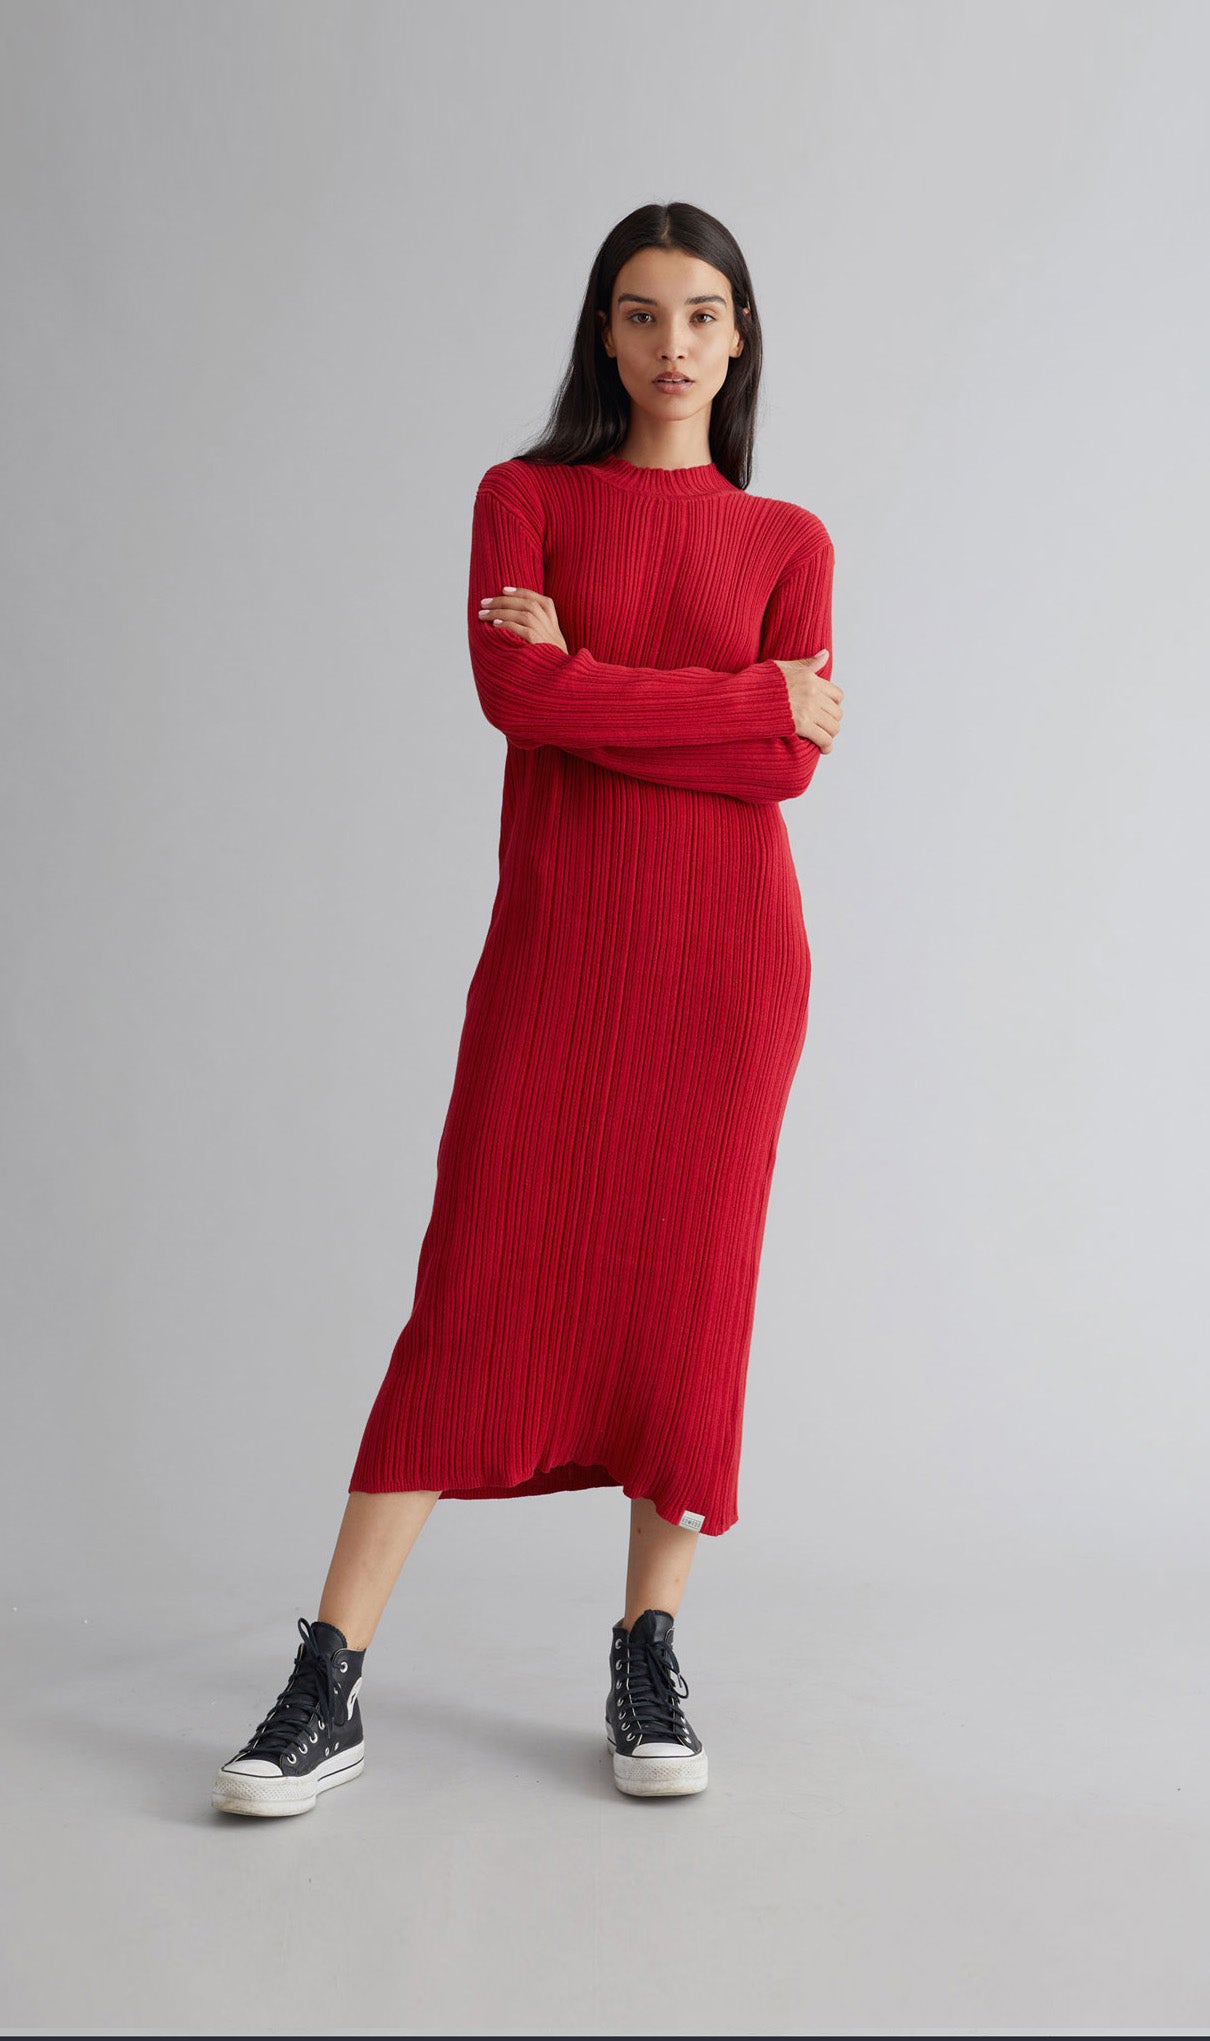 MAYUMI Womens Organic Cotton Dress Red, Size 3 / UK 12 / EUR 40